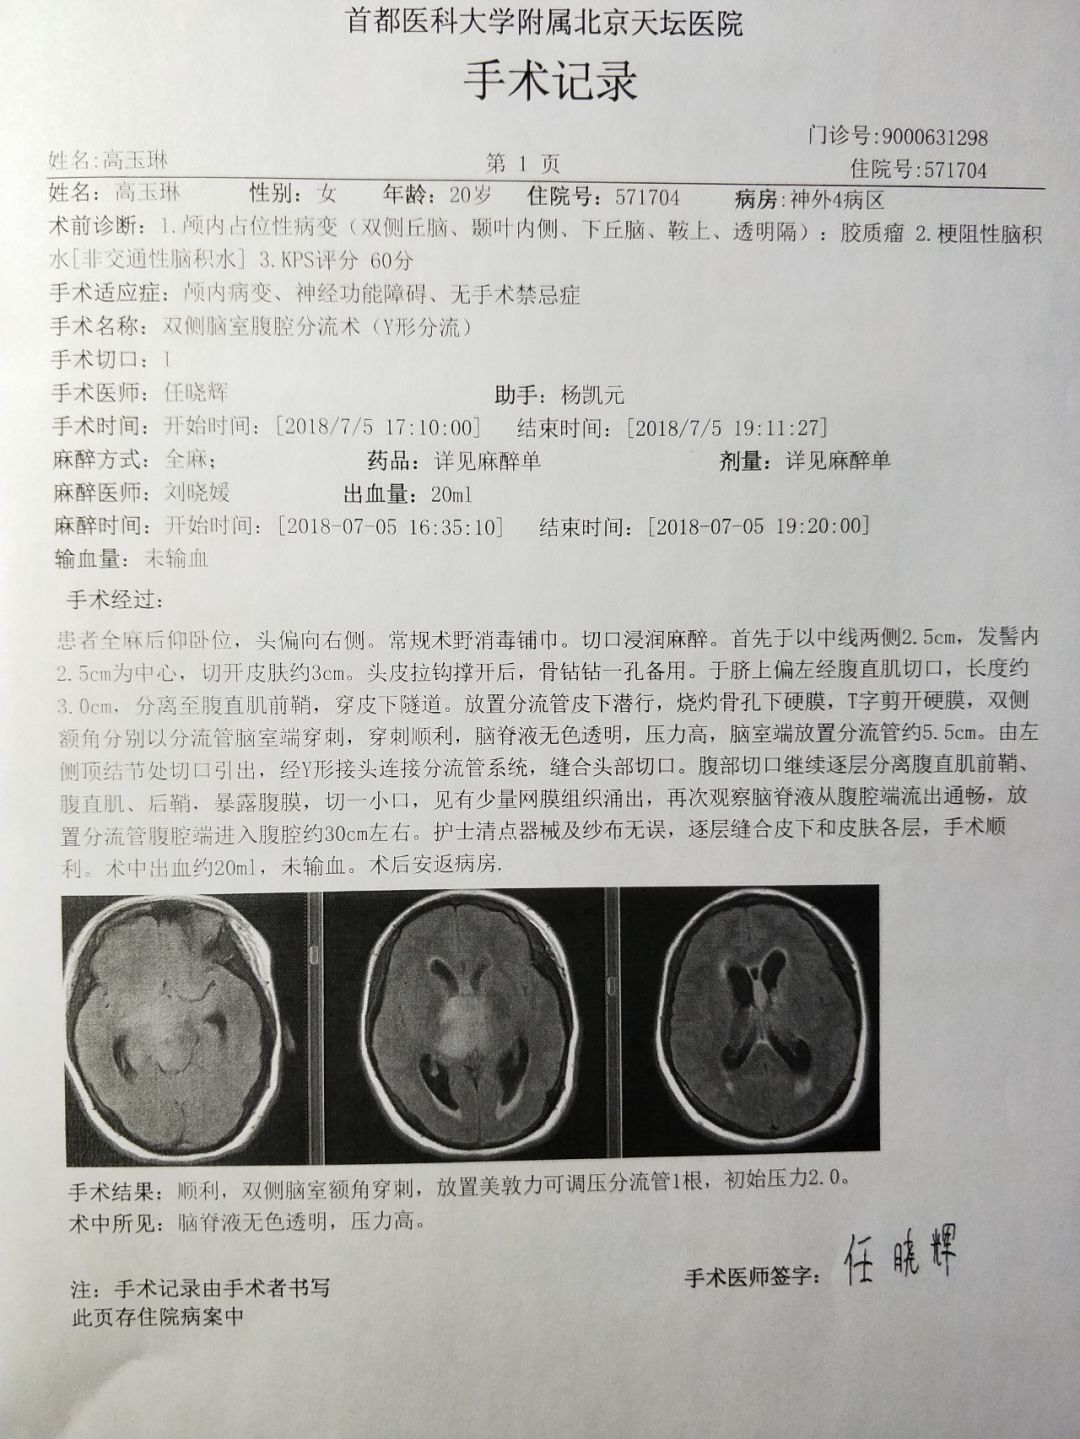 7月4日,玉琳转院到北京天坛医院,最终诊断为恶性神经胶质瘤,而这时,她